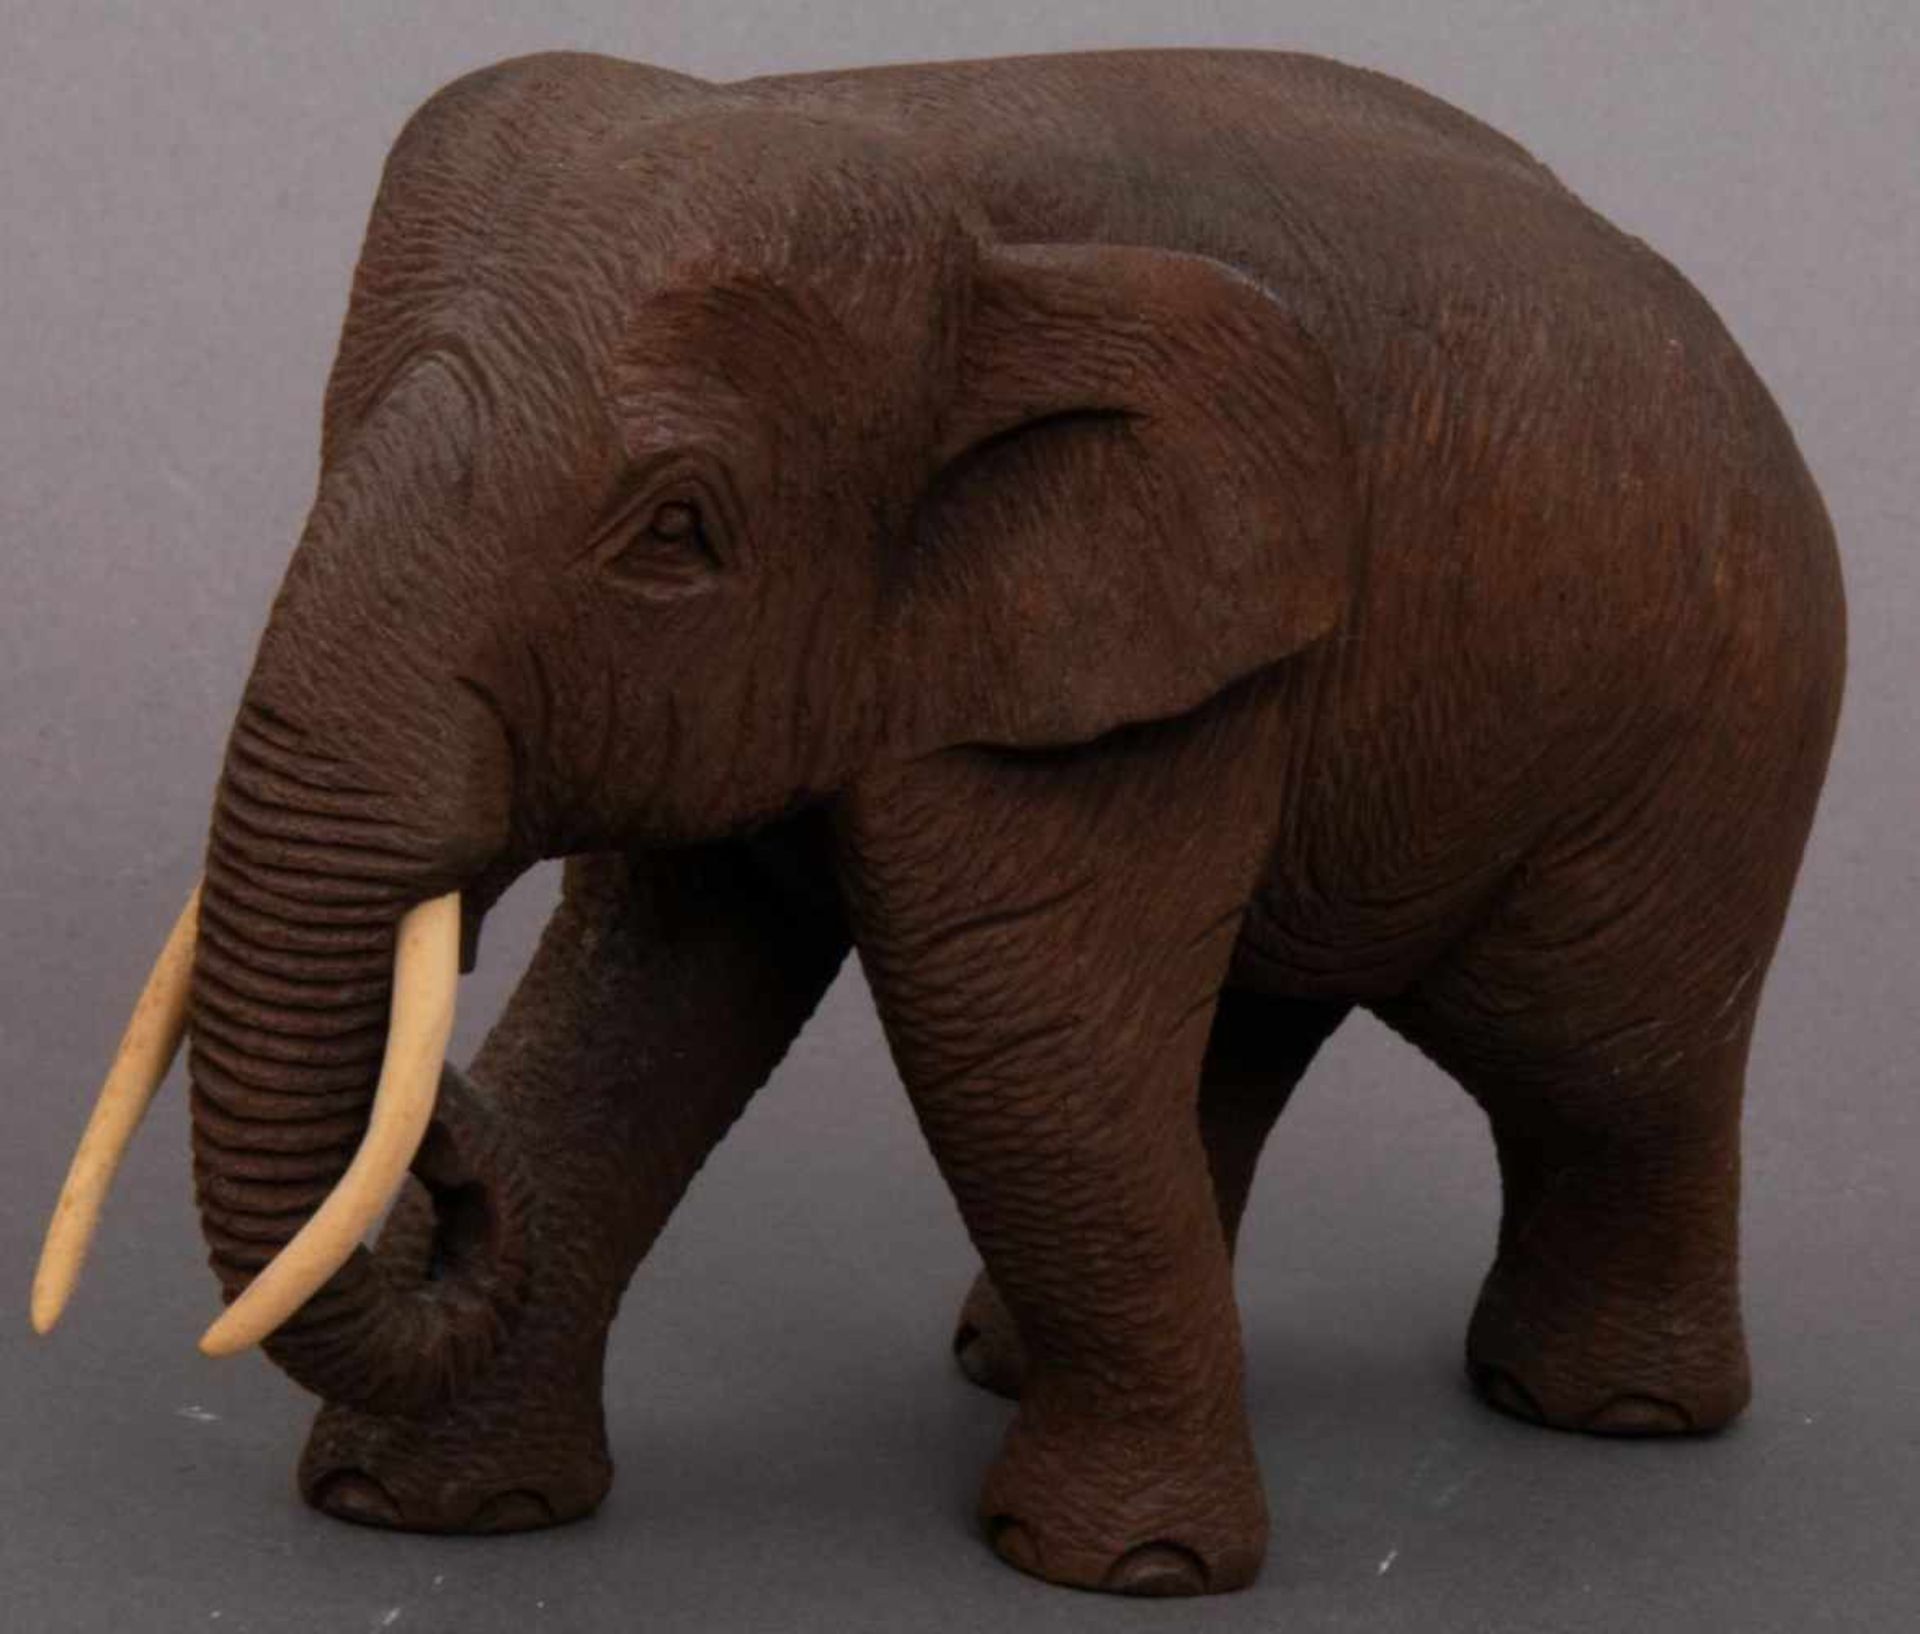 3 geschnitzte Elefanten, dunkles Hartholz, Stoßzähne aus Knochen/Bein. Max. Höhe ca. 15,5 cm, max. - Bild 2 aus 6